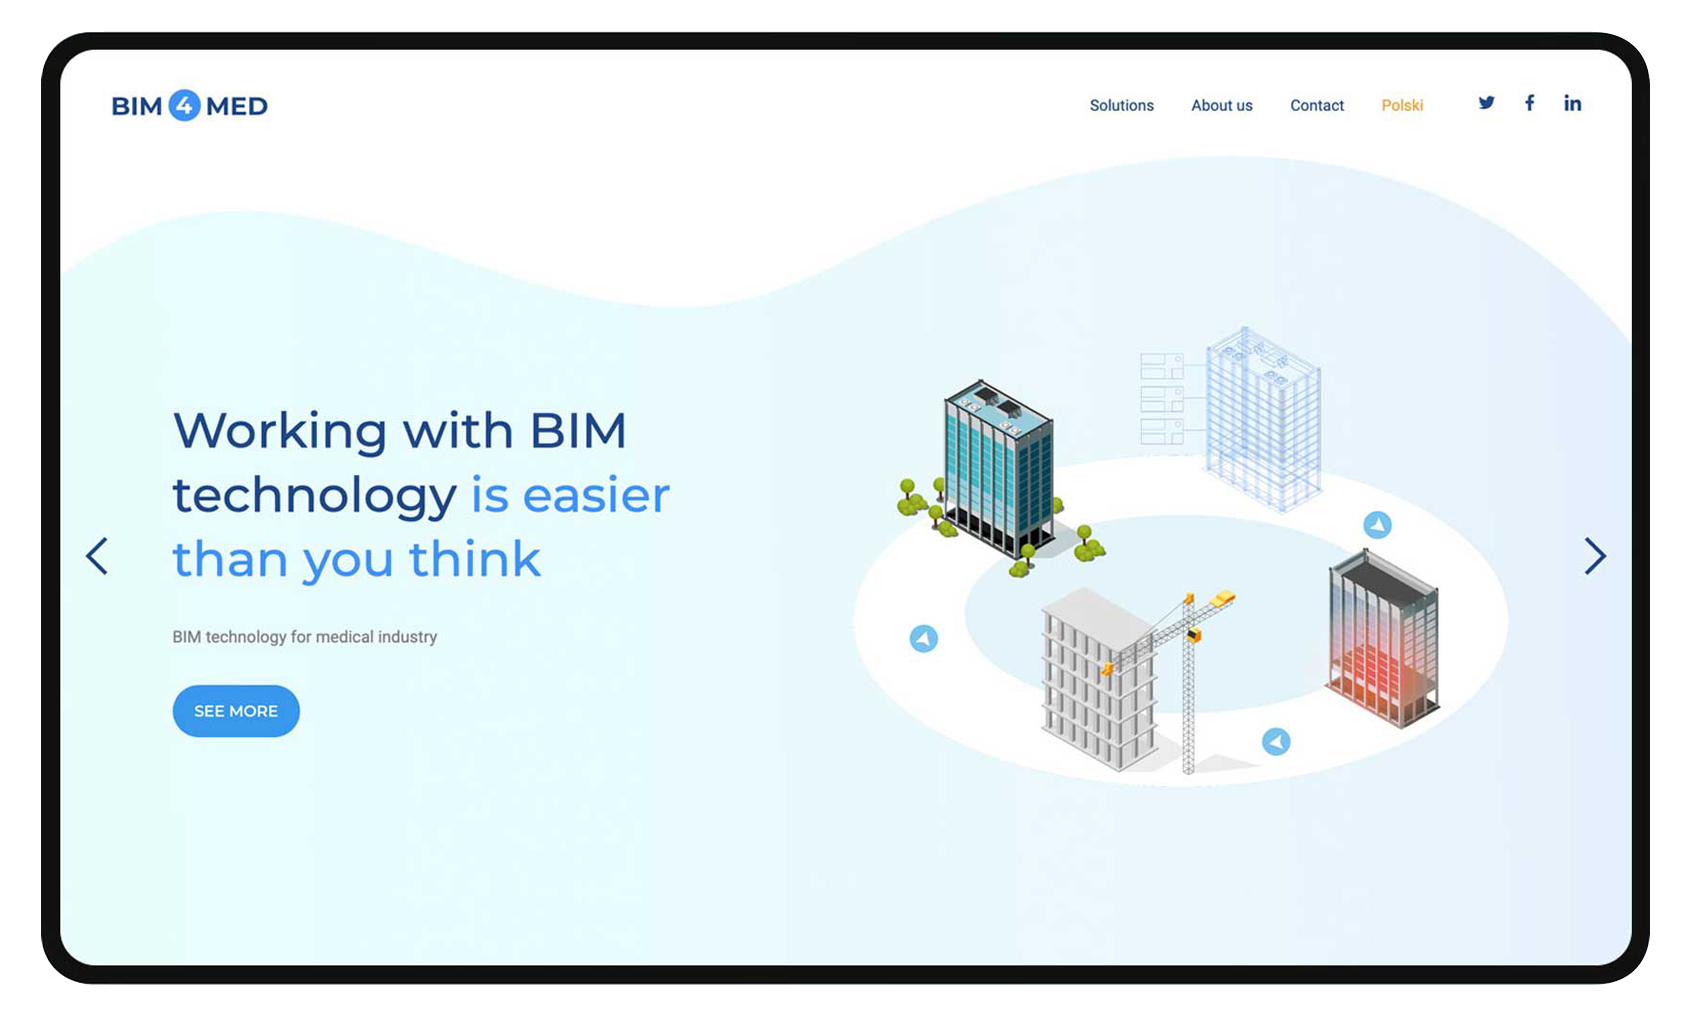 BIM technology for medical industry – bim4med